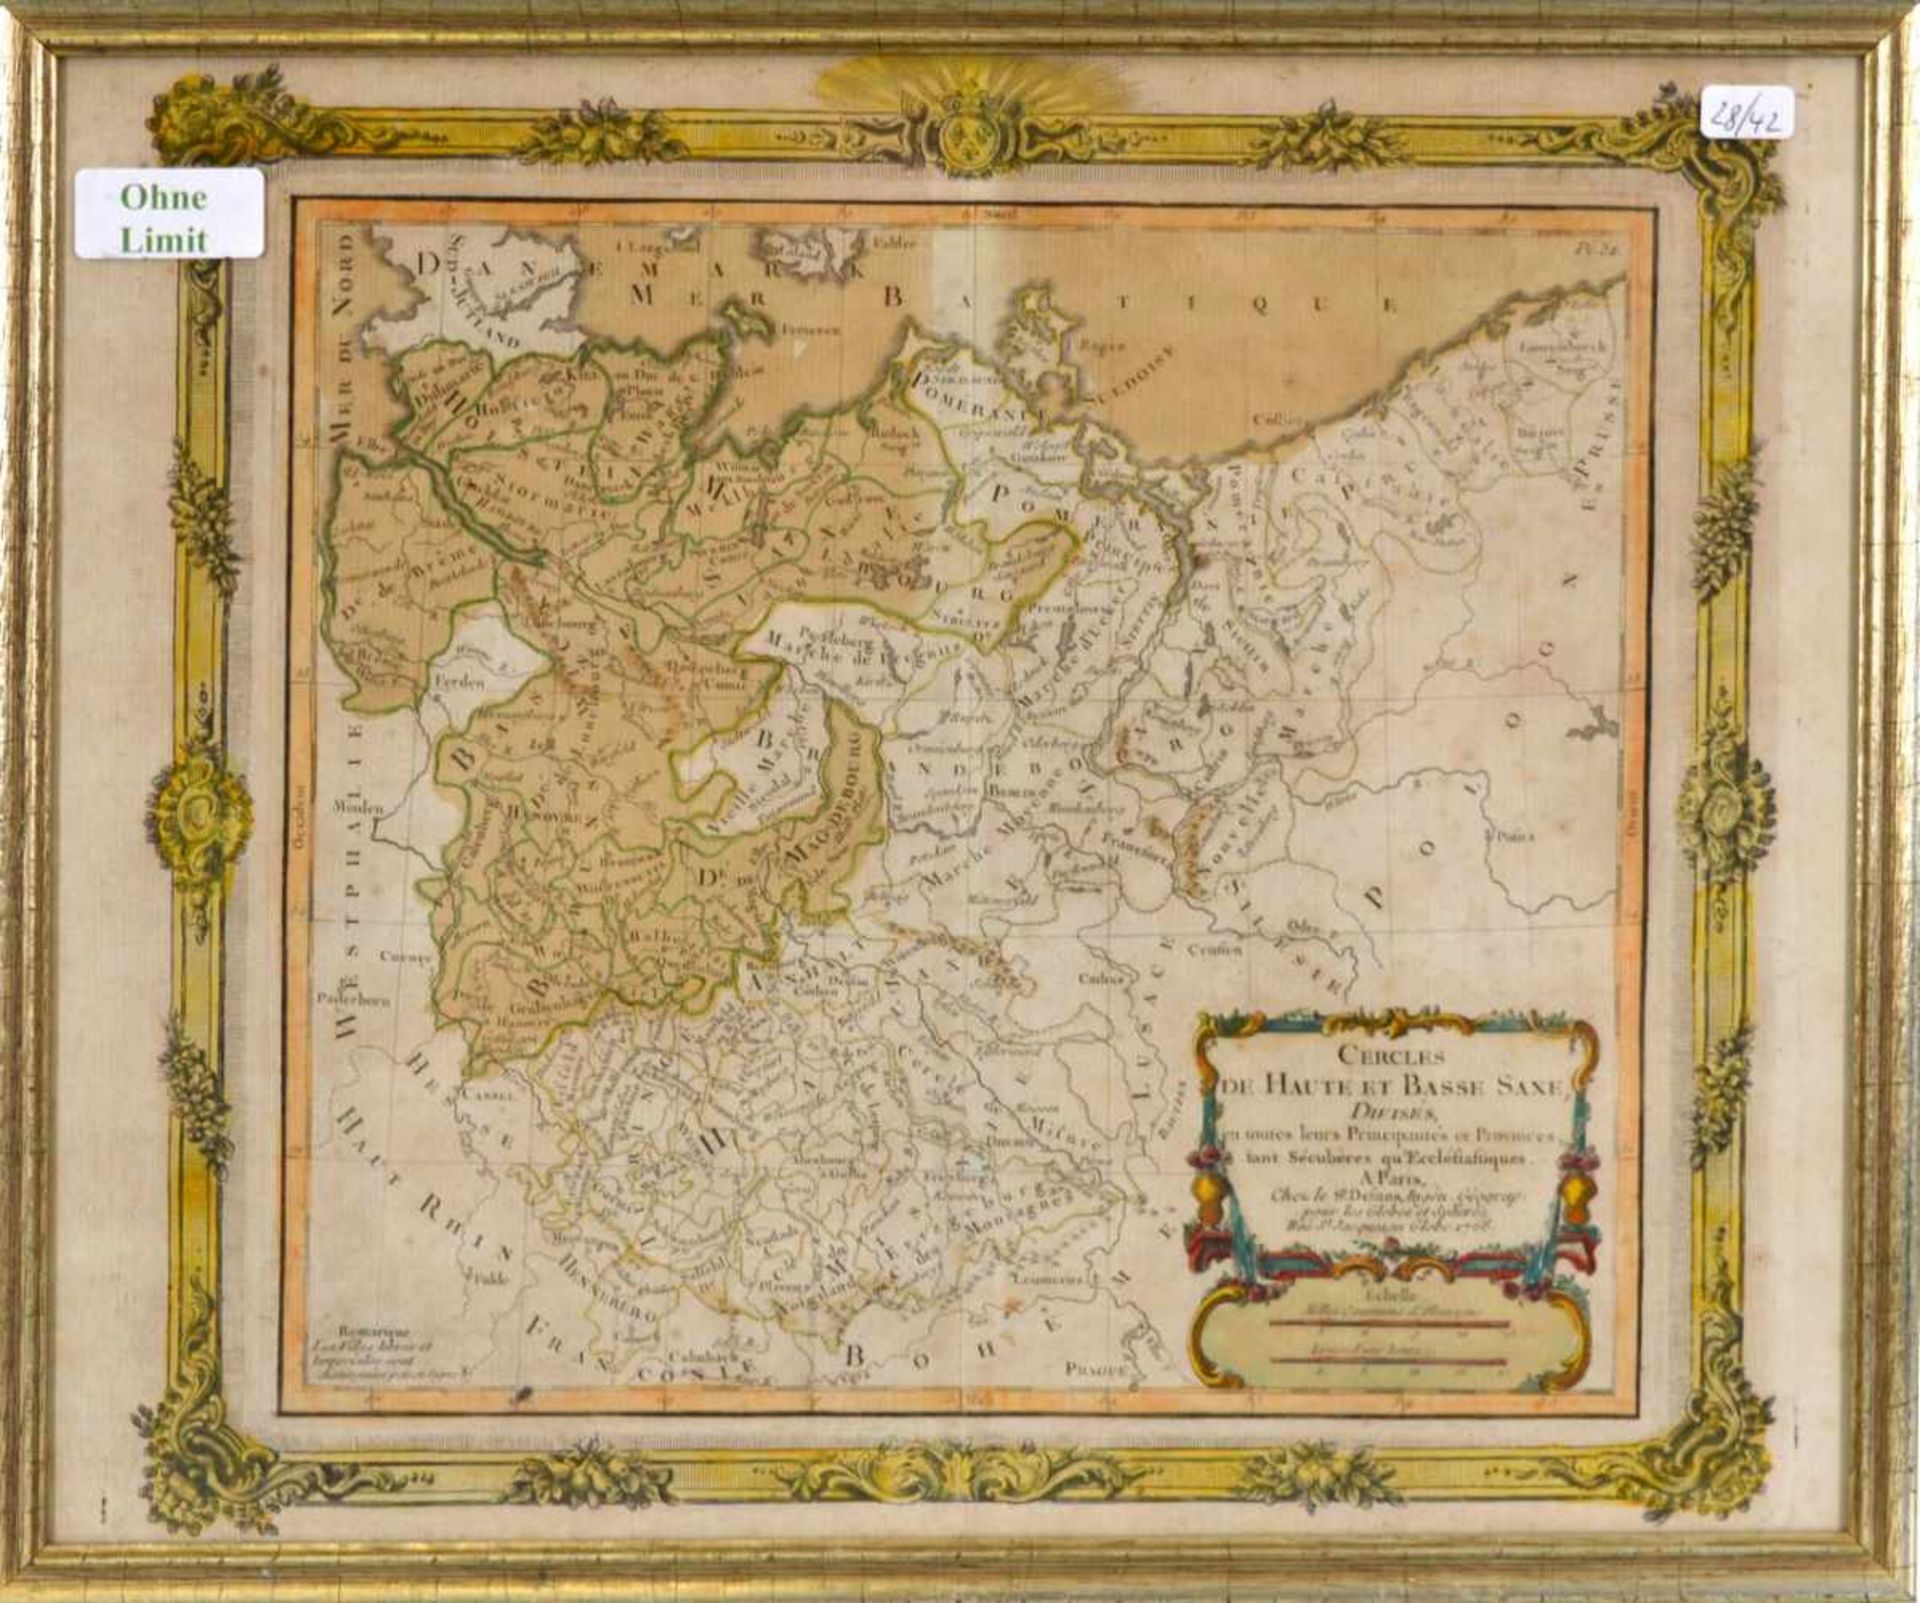 Landkarte Norddeutsche Küste mit Hamburg, coloriert, verziert, 27 X 31 cm, Rahmen, Paris, 1766